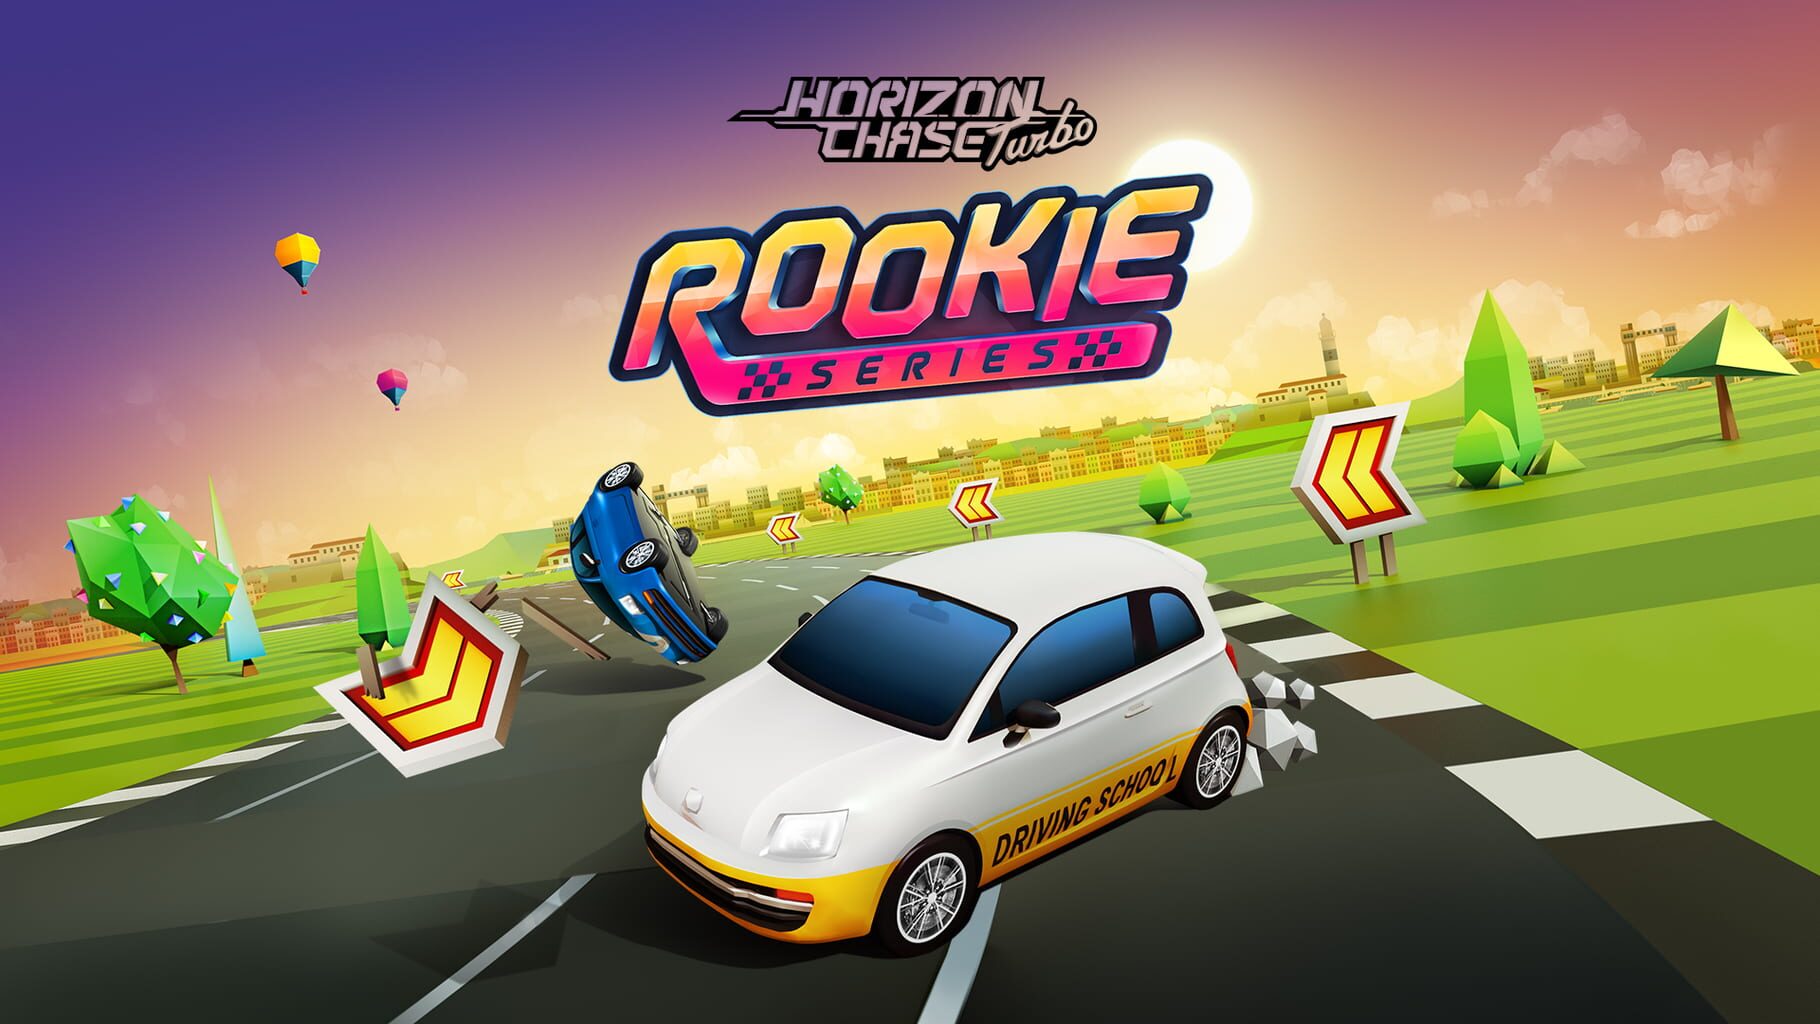 Horizon Chase Turbo: Rookie Series artwork